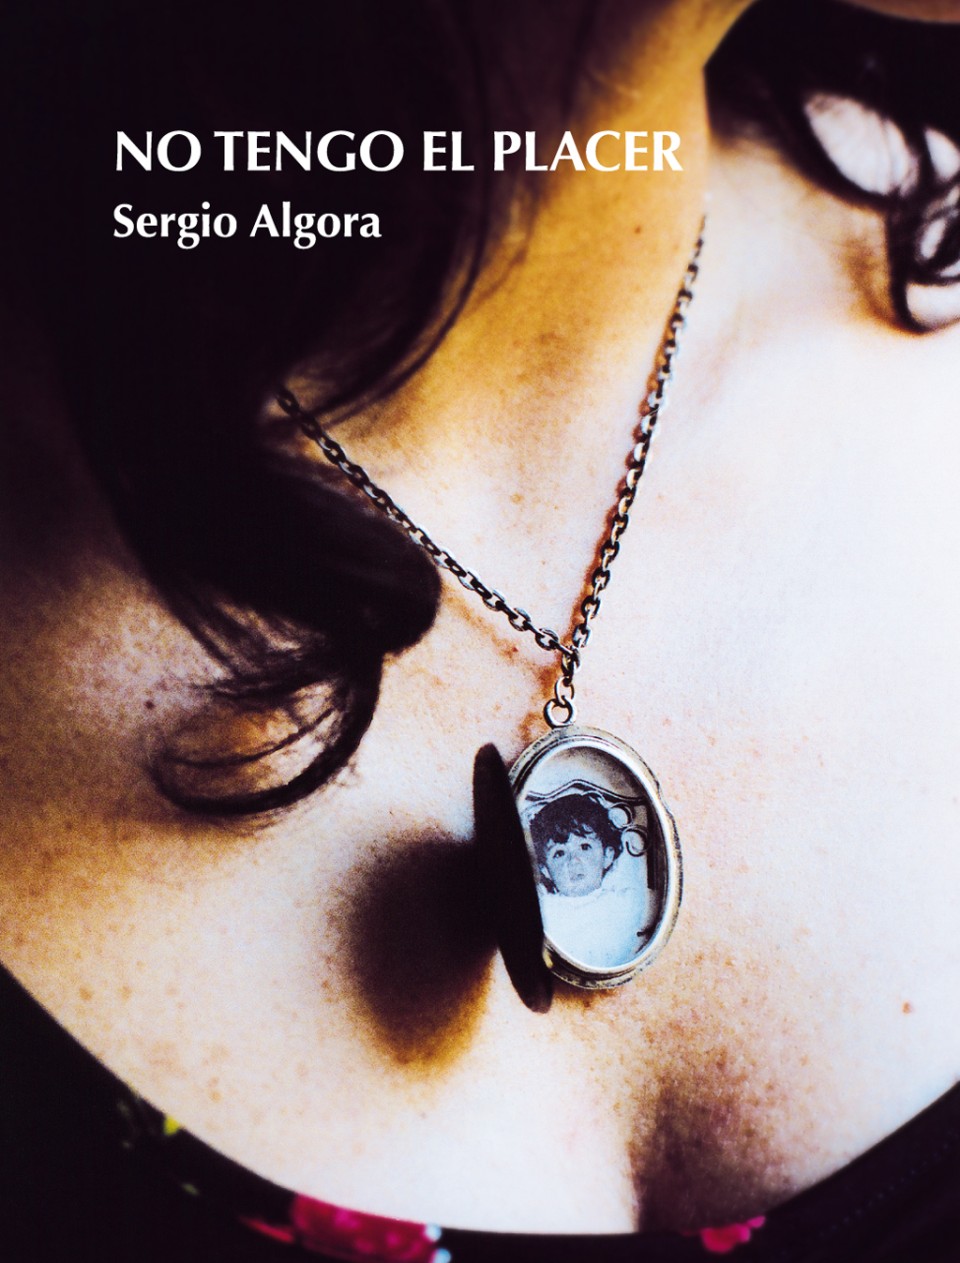 Imagen 'No tengo el placer', Sergio Algora (Xórdica, 2009)